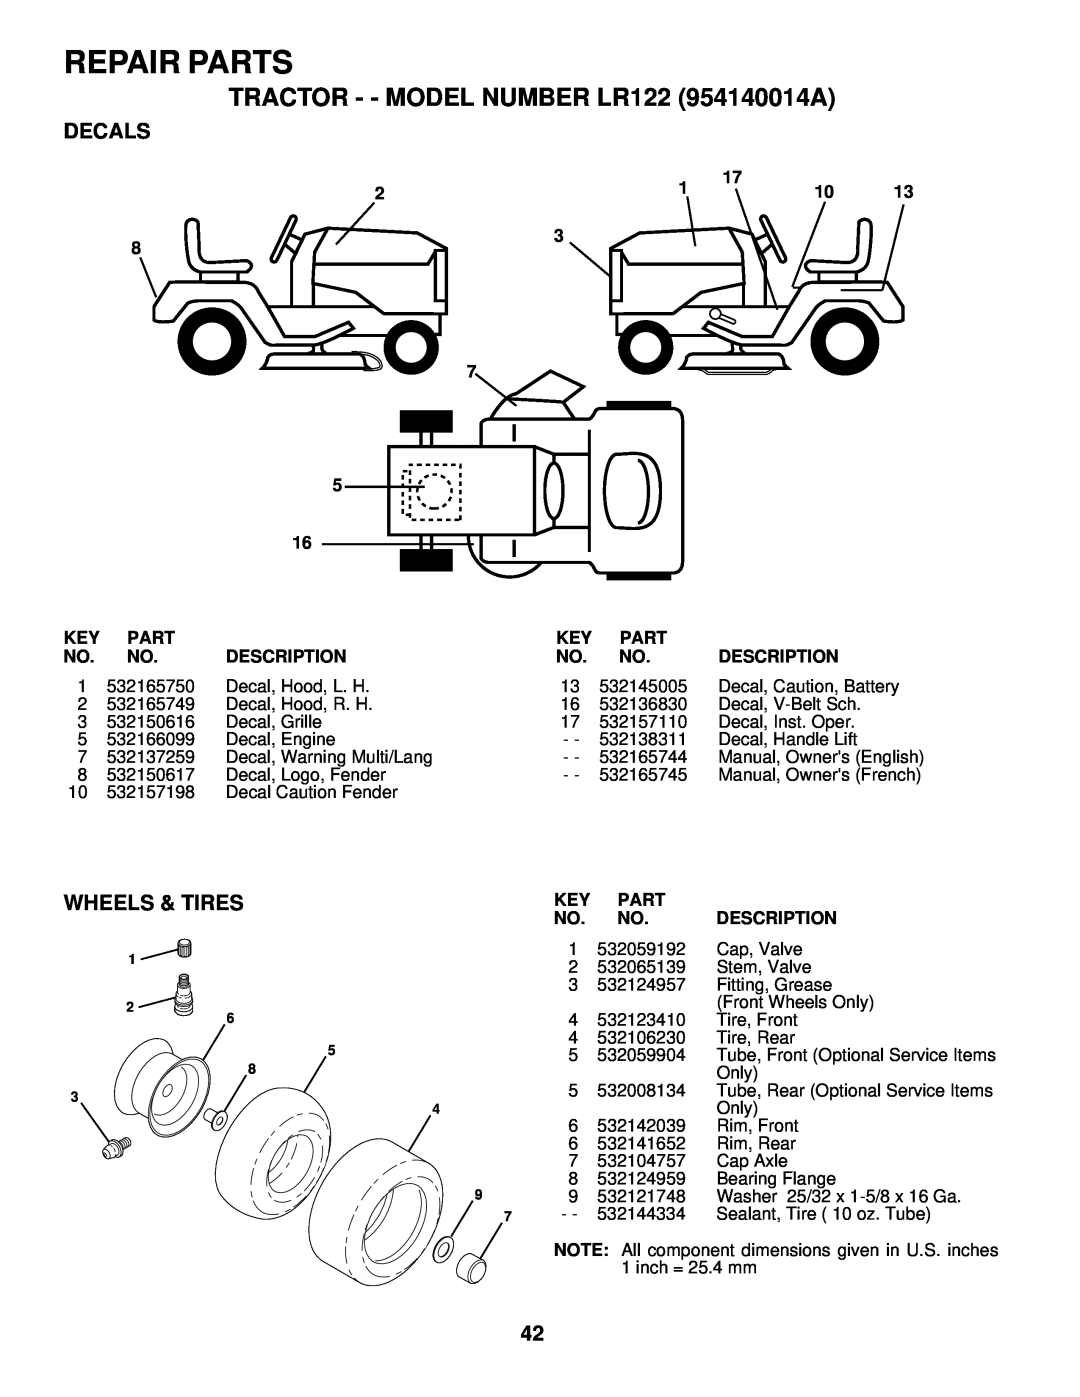 Husqvarna owner manual Decals, Wheels & Tires, Repair Parts, TRACTOR - - MODEL NUMBER LR122 954140014A, Description 